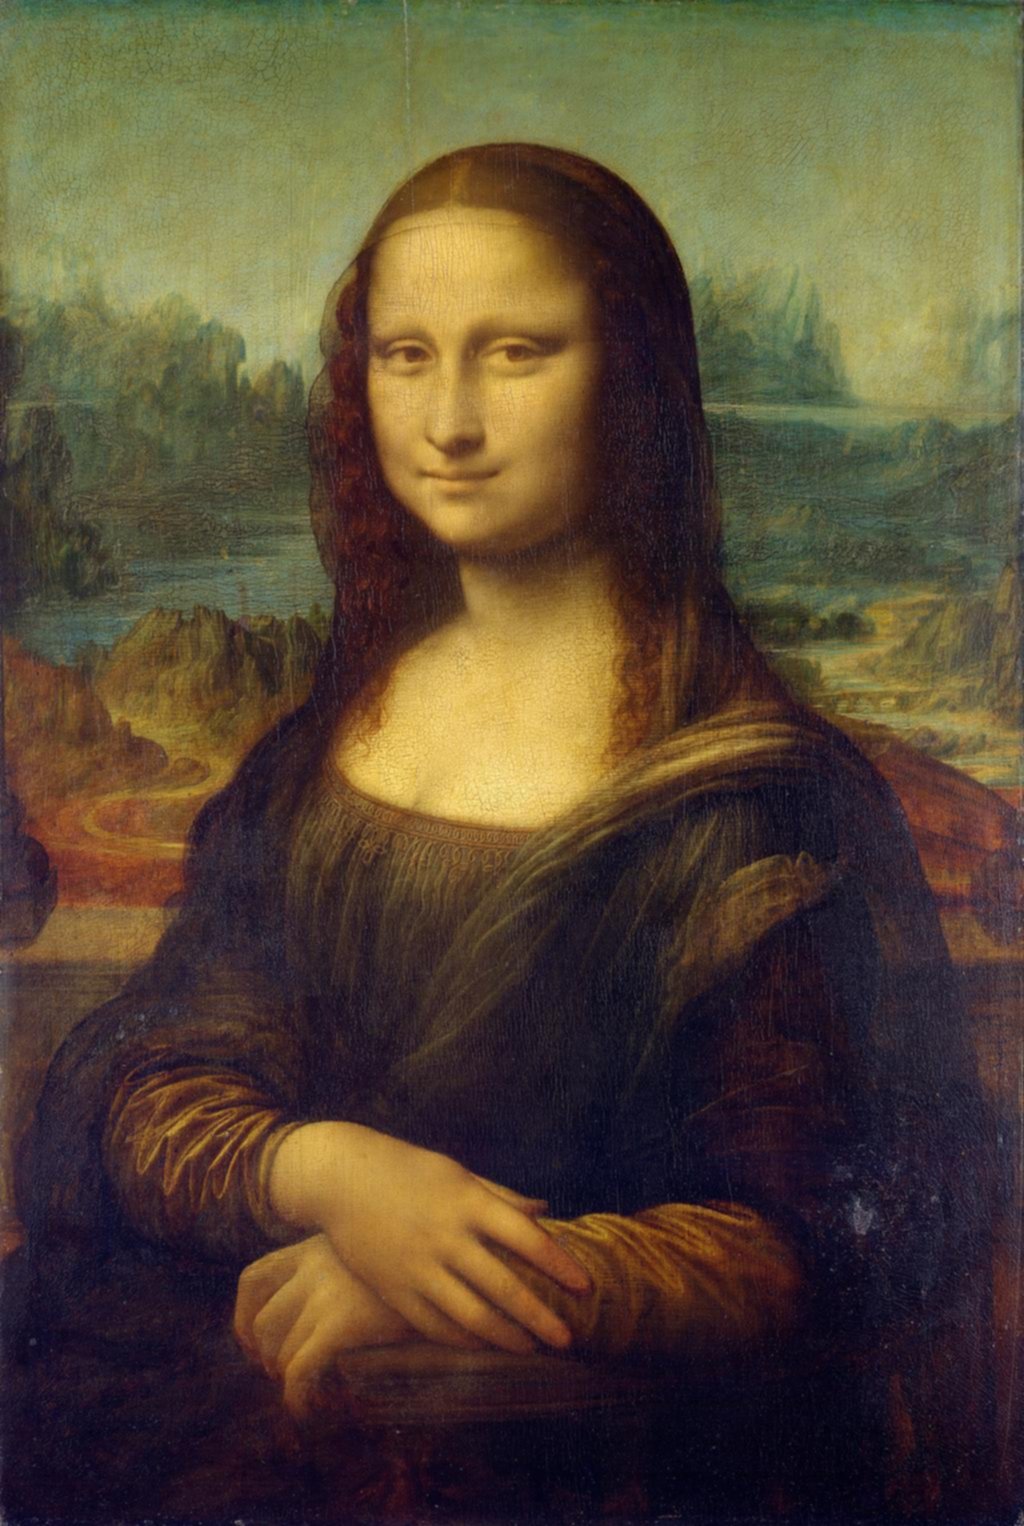 El mito de la mirada mágica de la Mona Lisa, ¿ha sido desacreditado?